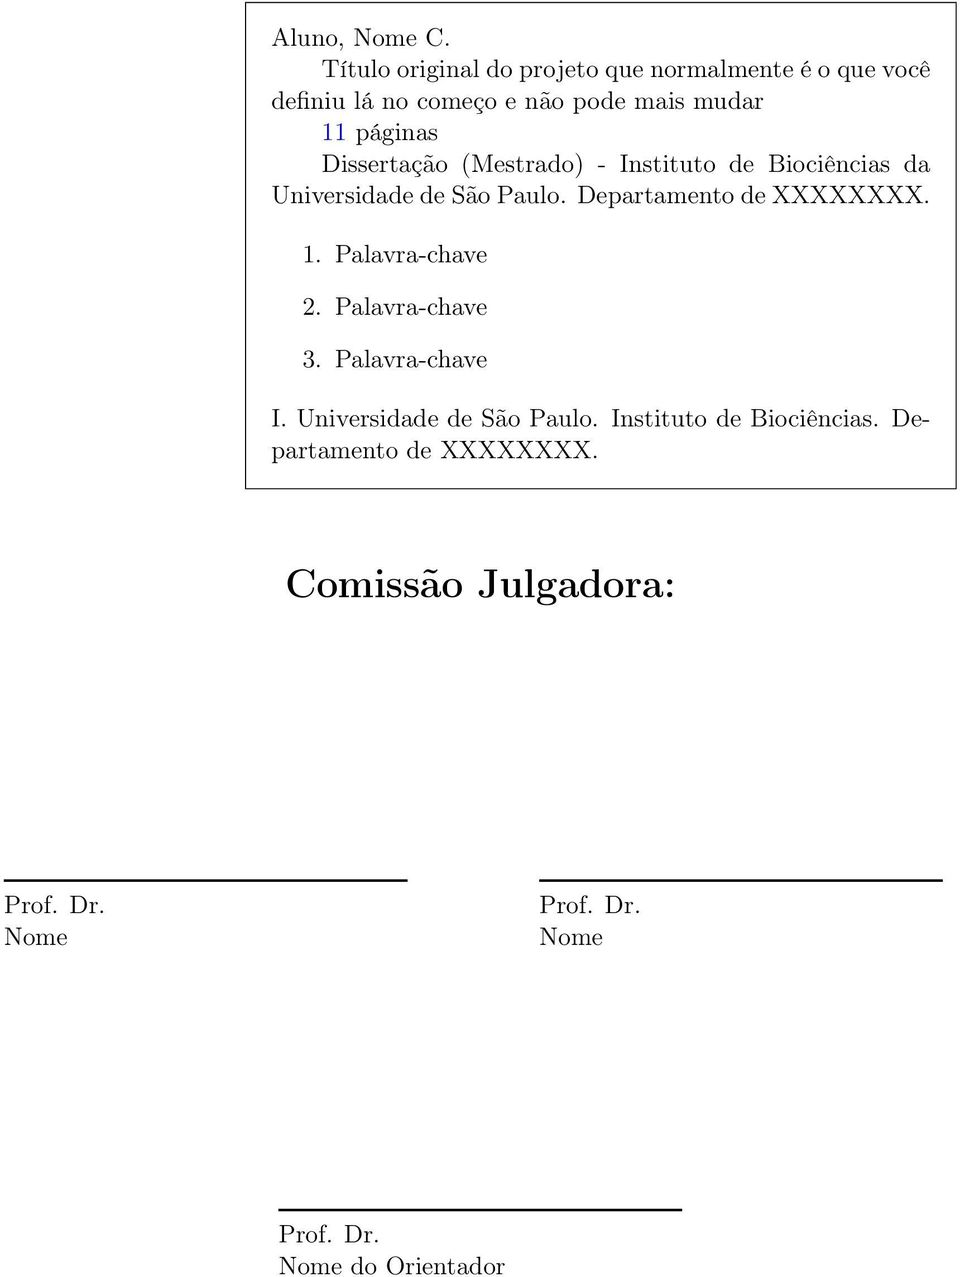 Dissertação (Mestrado) - Instituto de Biociências da Universidade de São Paulo. Departamento de XXXXXXXX. 1.